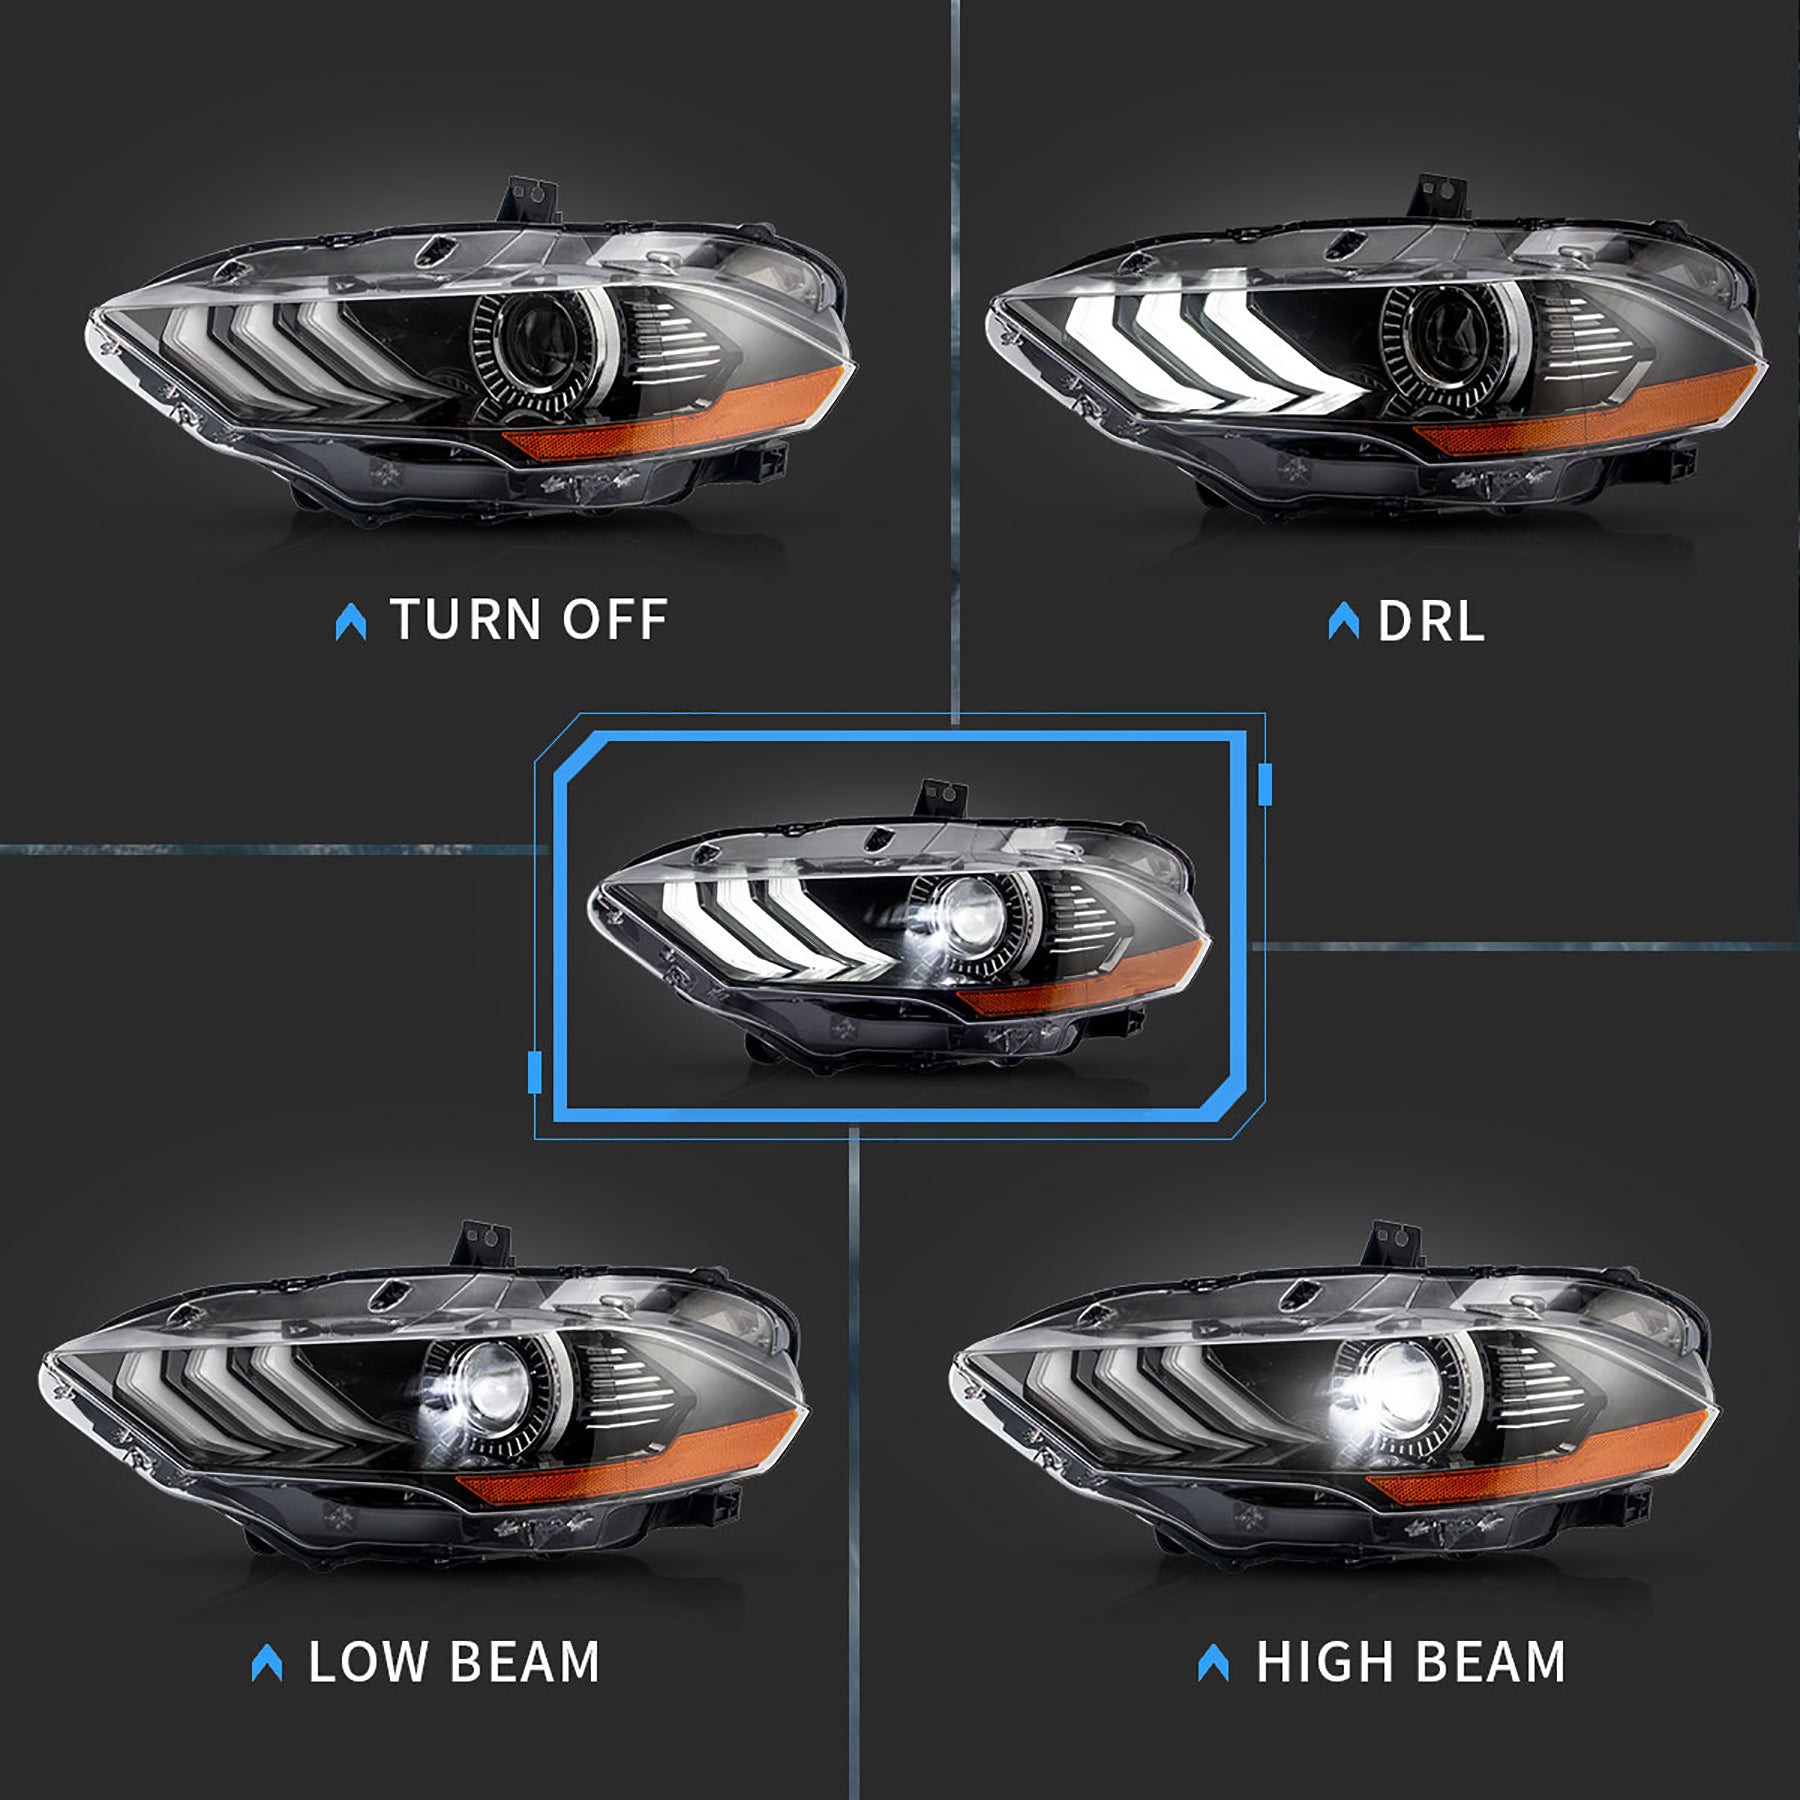 NEU LED-Scheinwerfer Frontscheinwerfer für Ford Mustang 2018-2020 Projektor mit dual Len-Strahlen